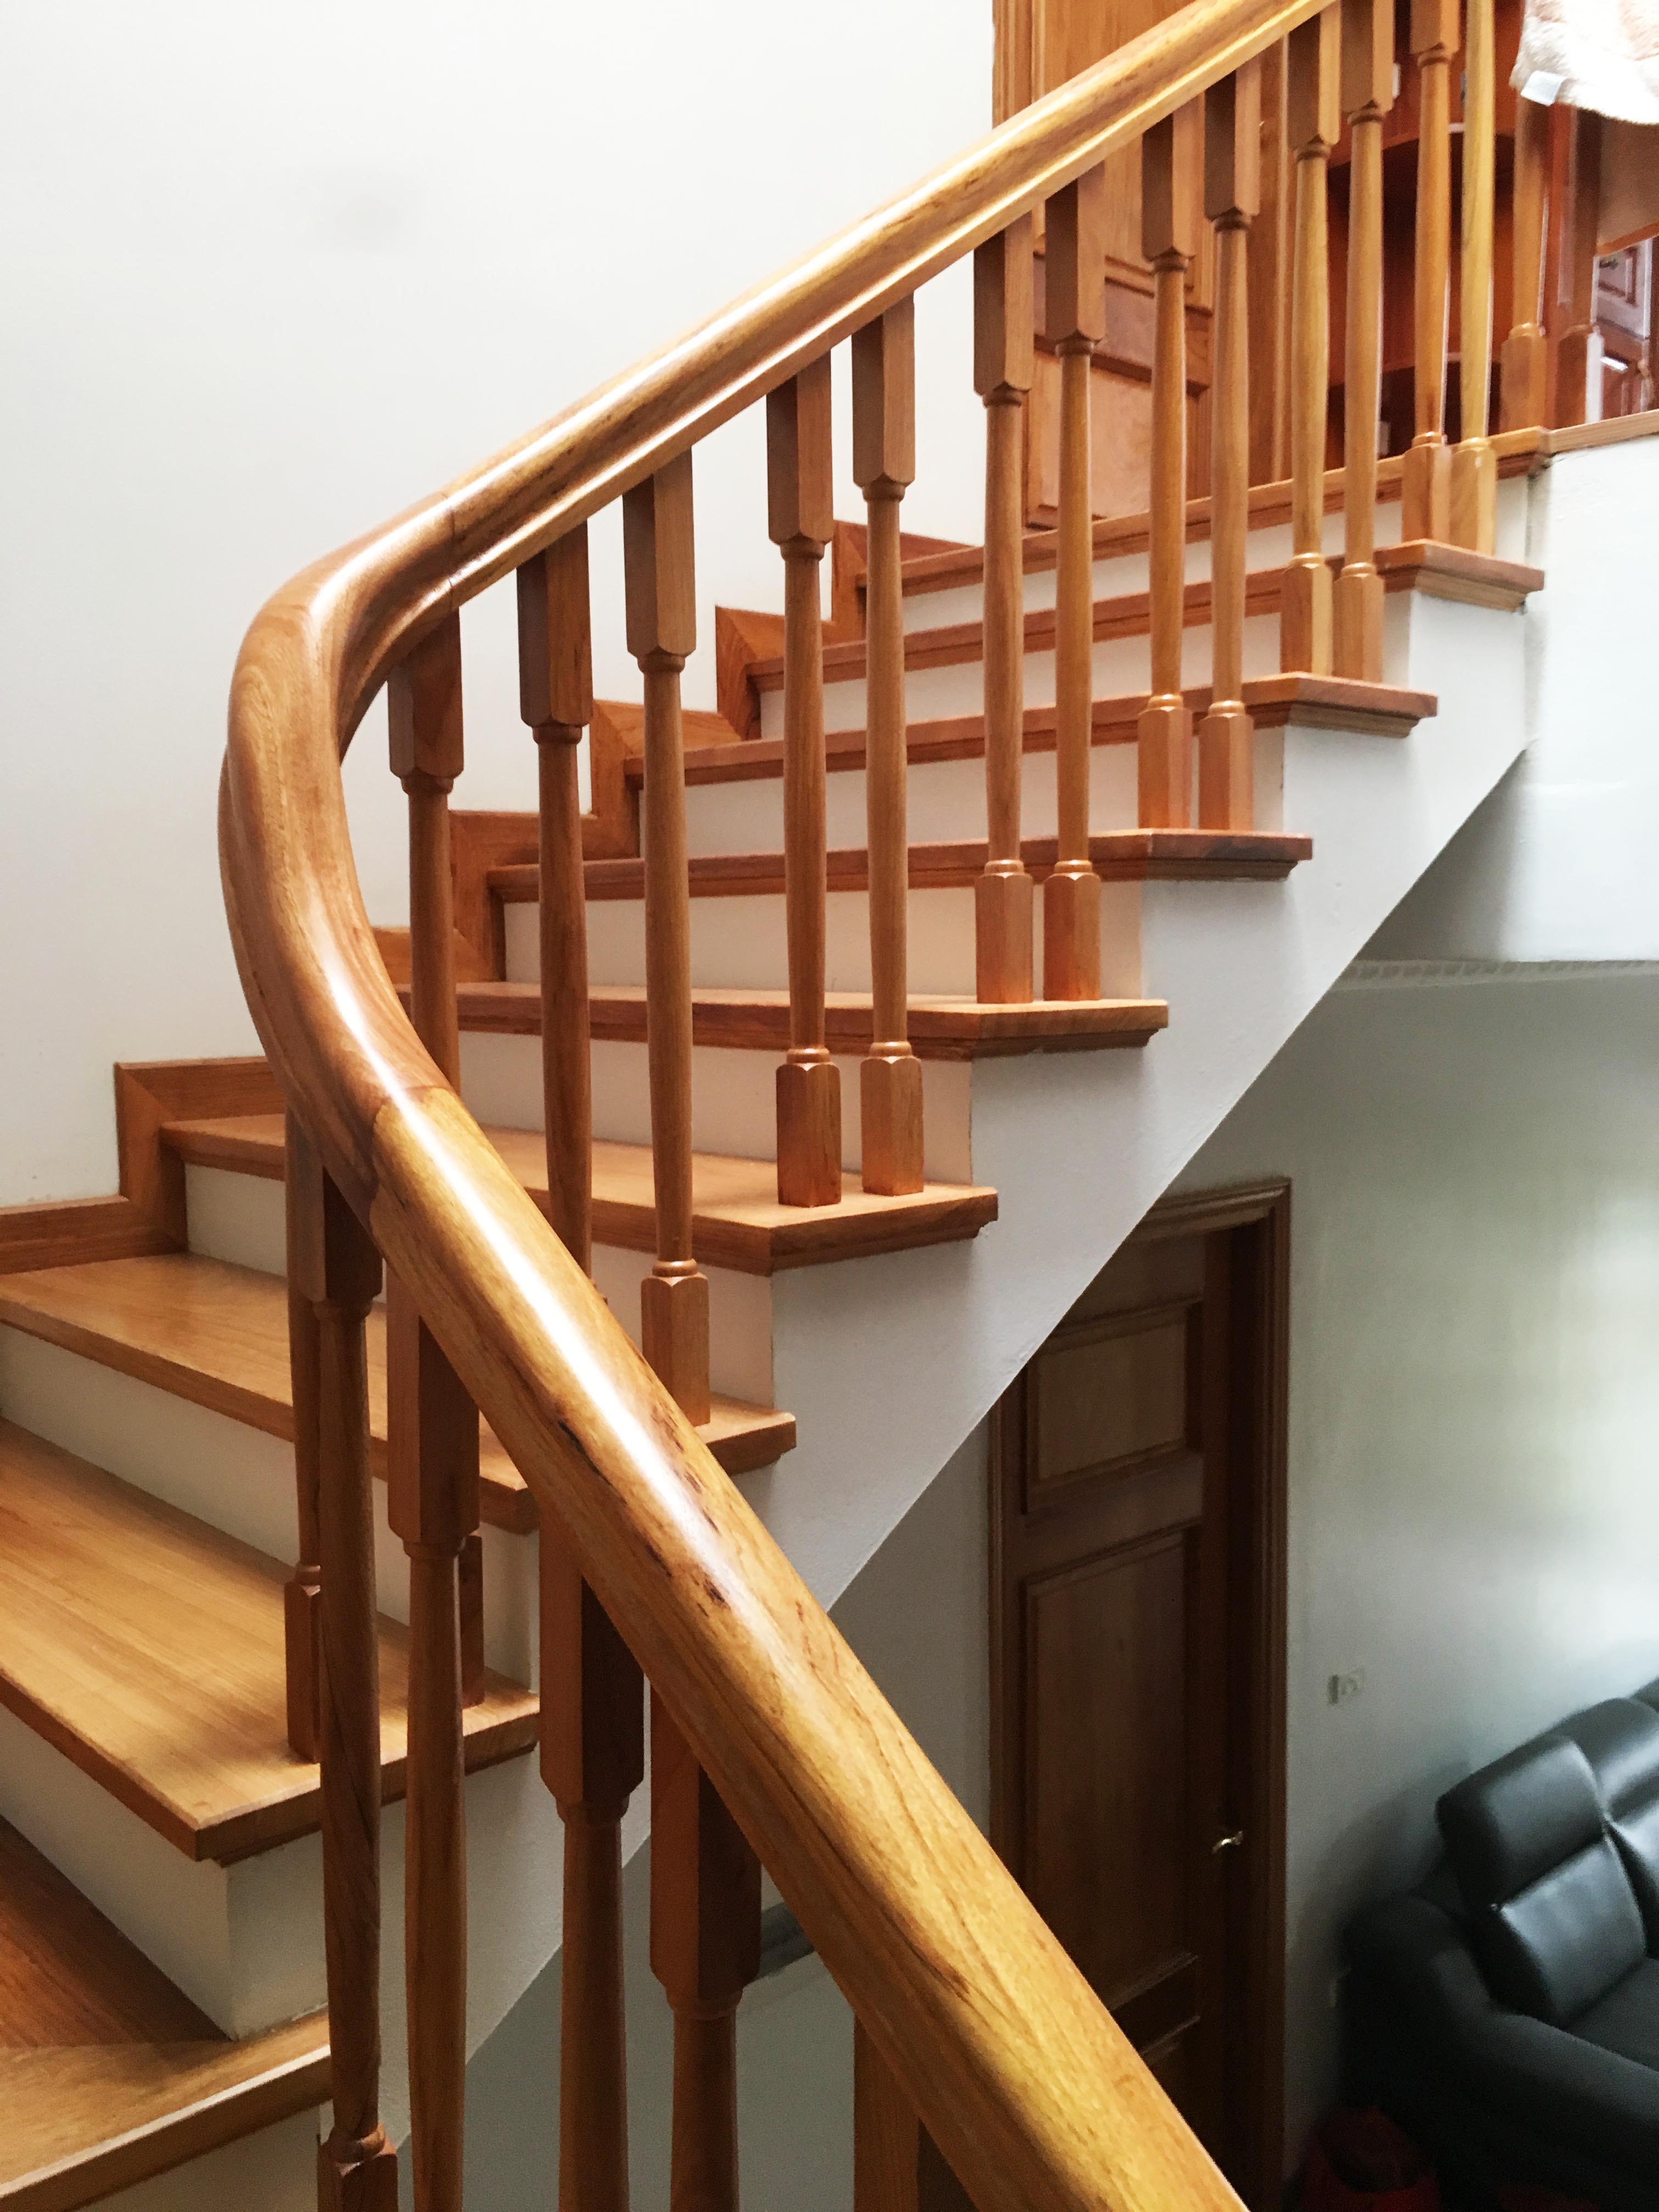 Tổng hợp các mẫu cầu thang gỗ đẹp nhất dành cho ngôi nhà của bạn - [Kích thước hình ảnh: 3024x4032 px]